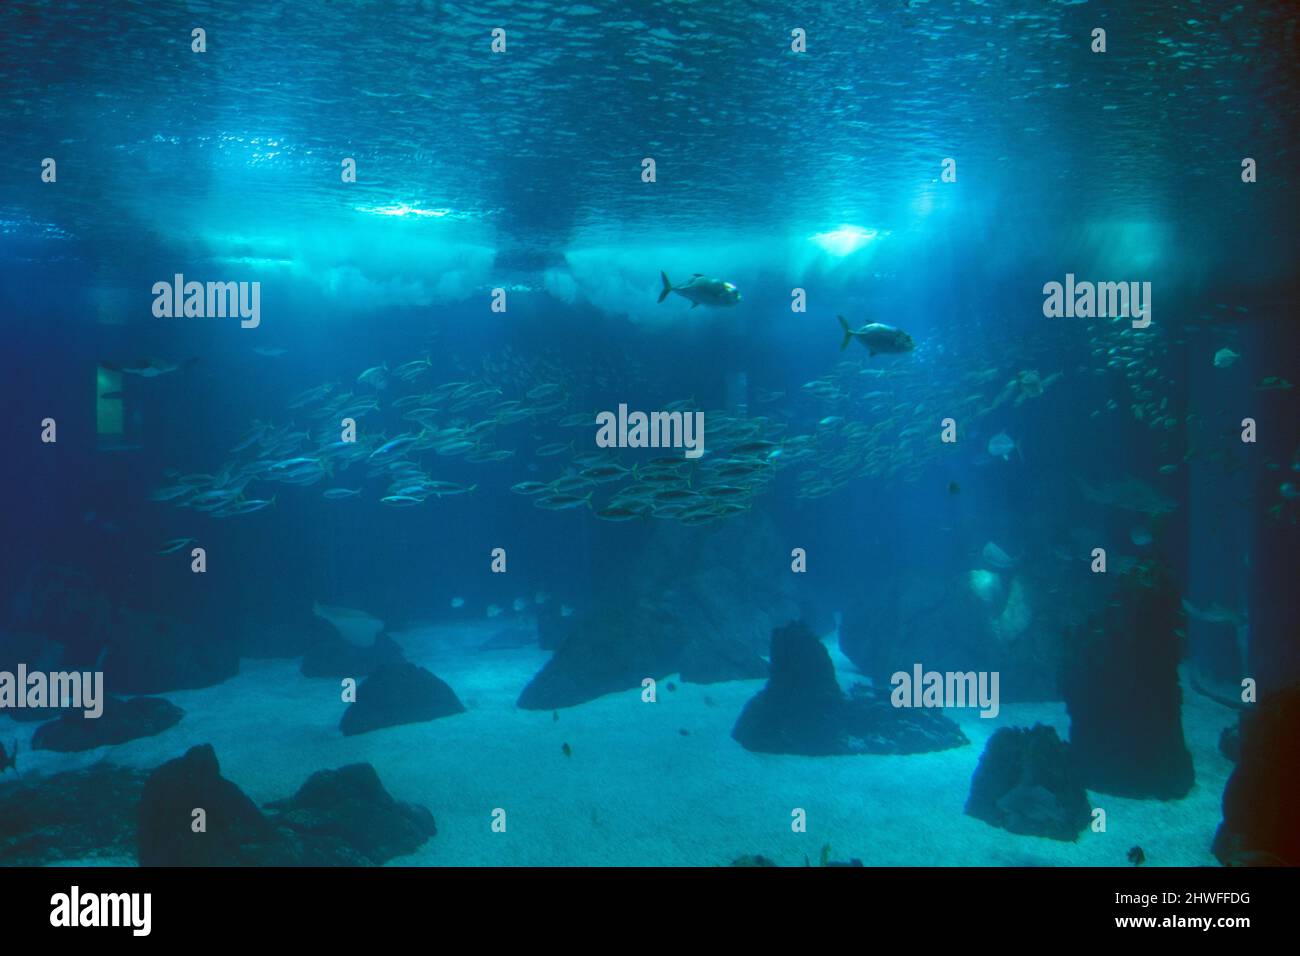 grill Bløde fødder analog Big aquarium hi-res stock photography and images - Alamy